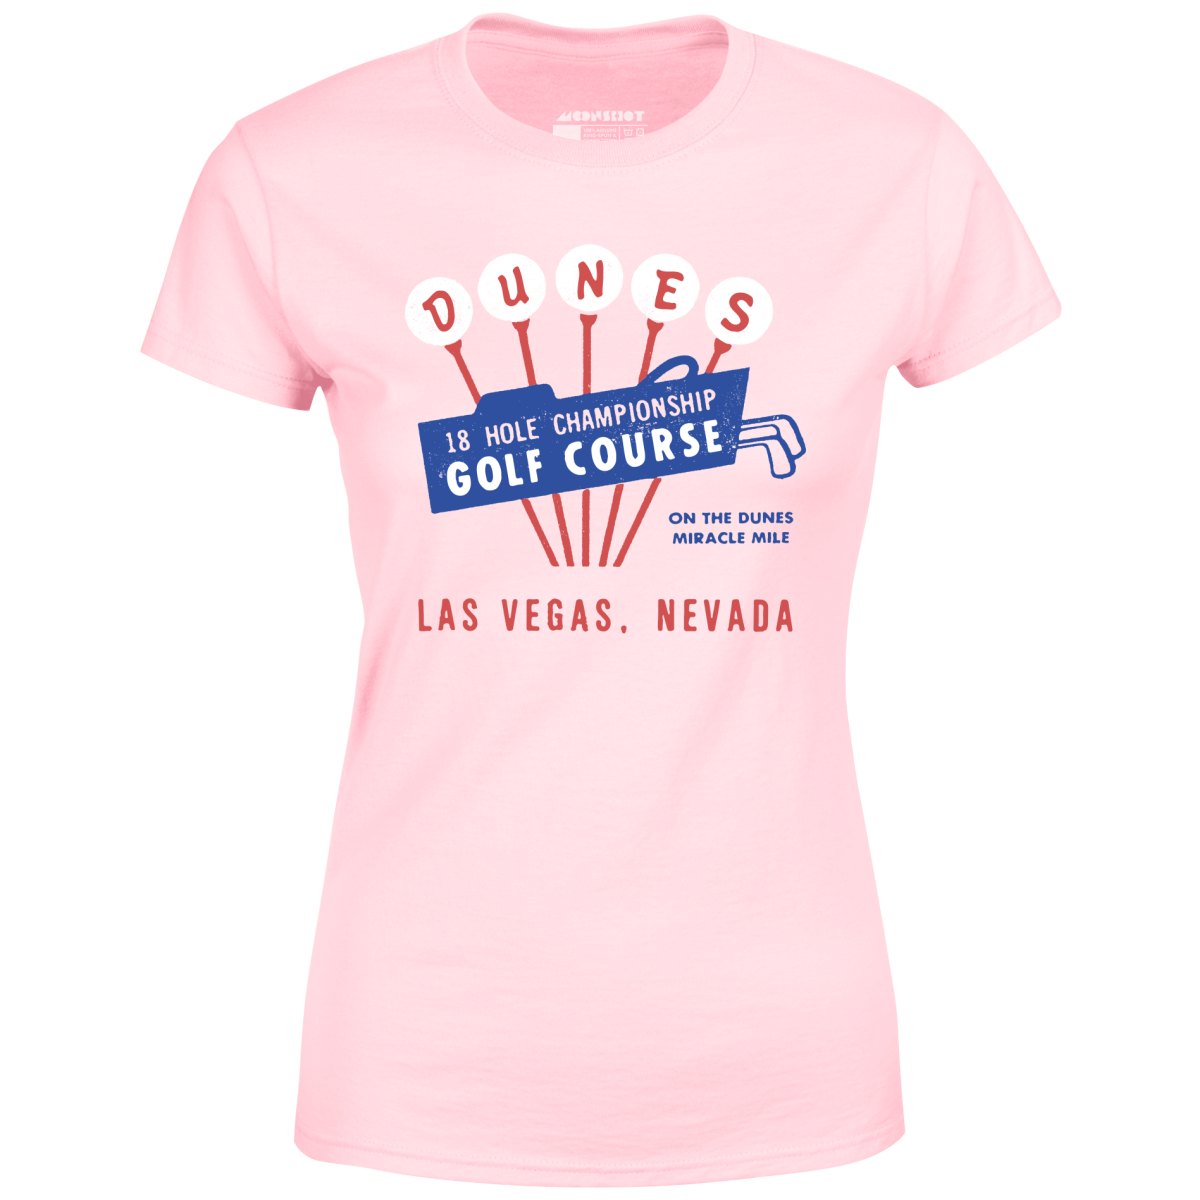 Dunes Golf Course - Vintage Las Vegas - Women's T-Shirt